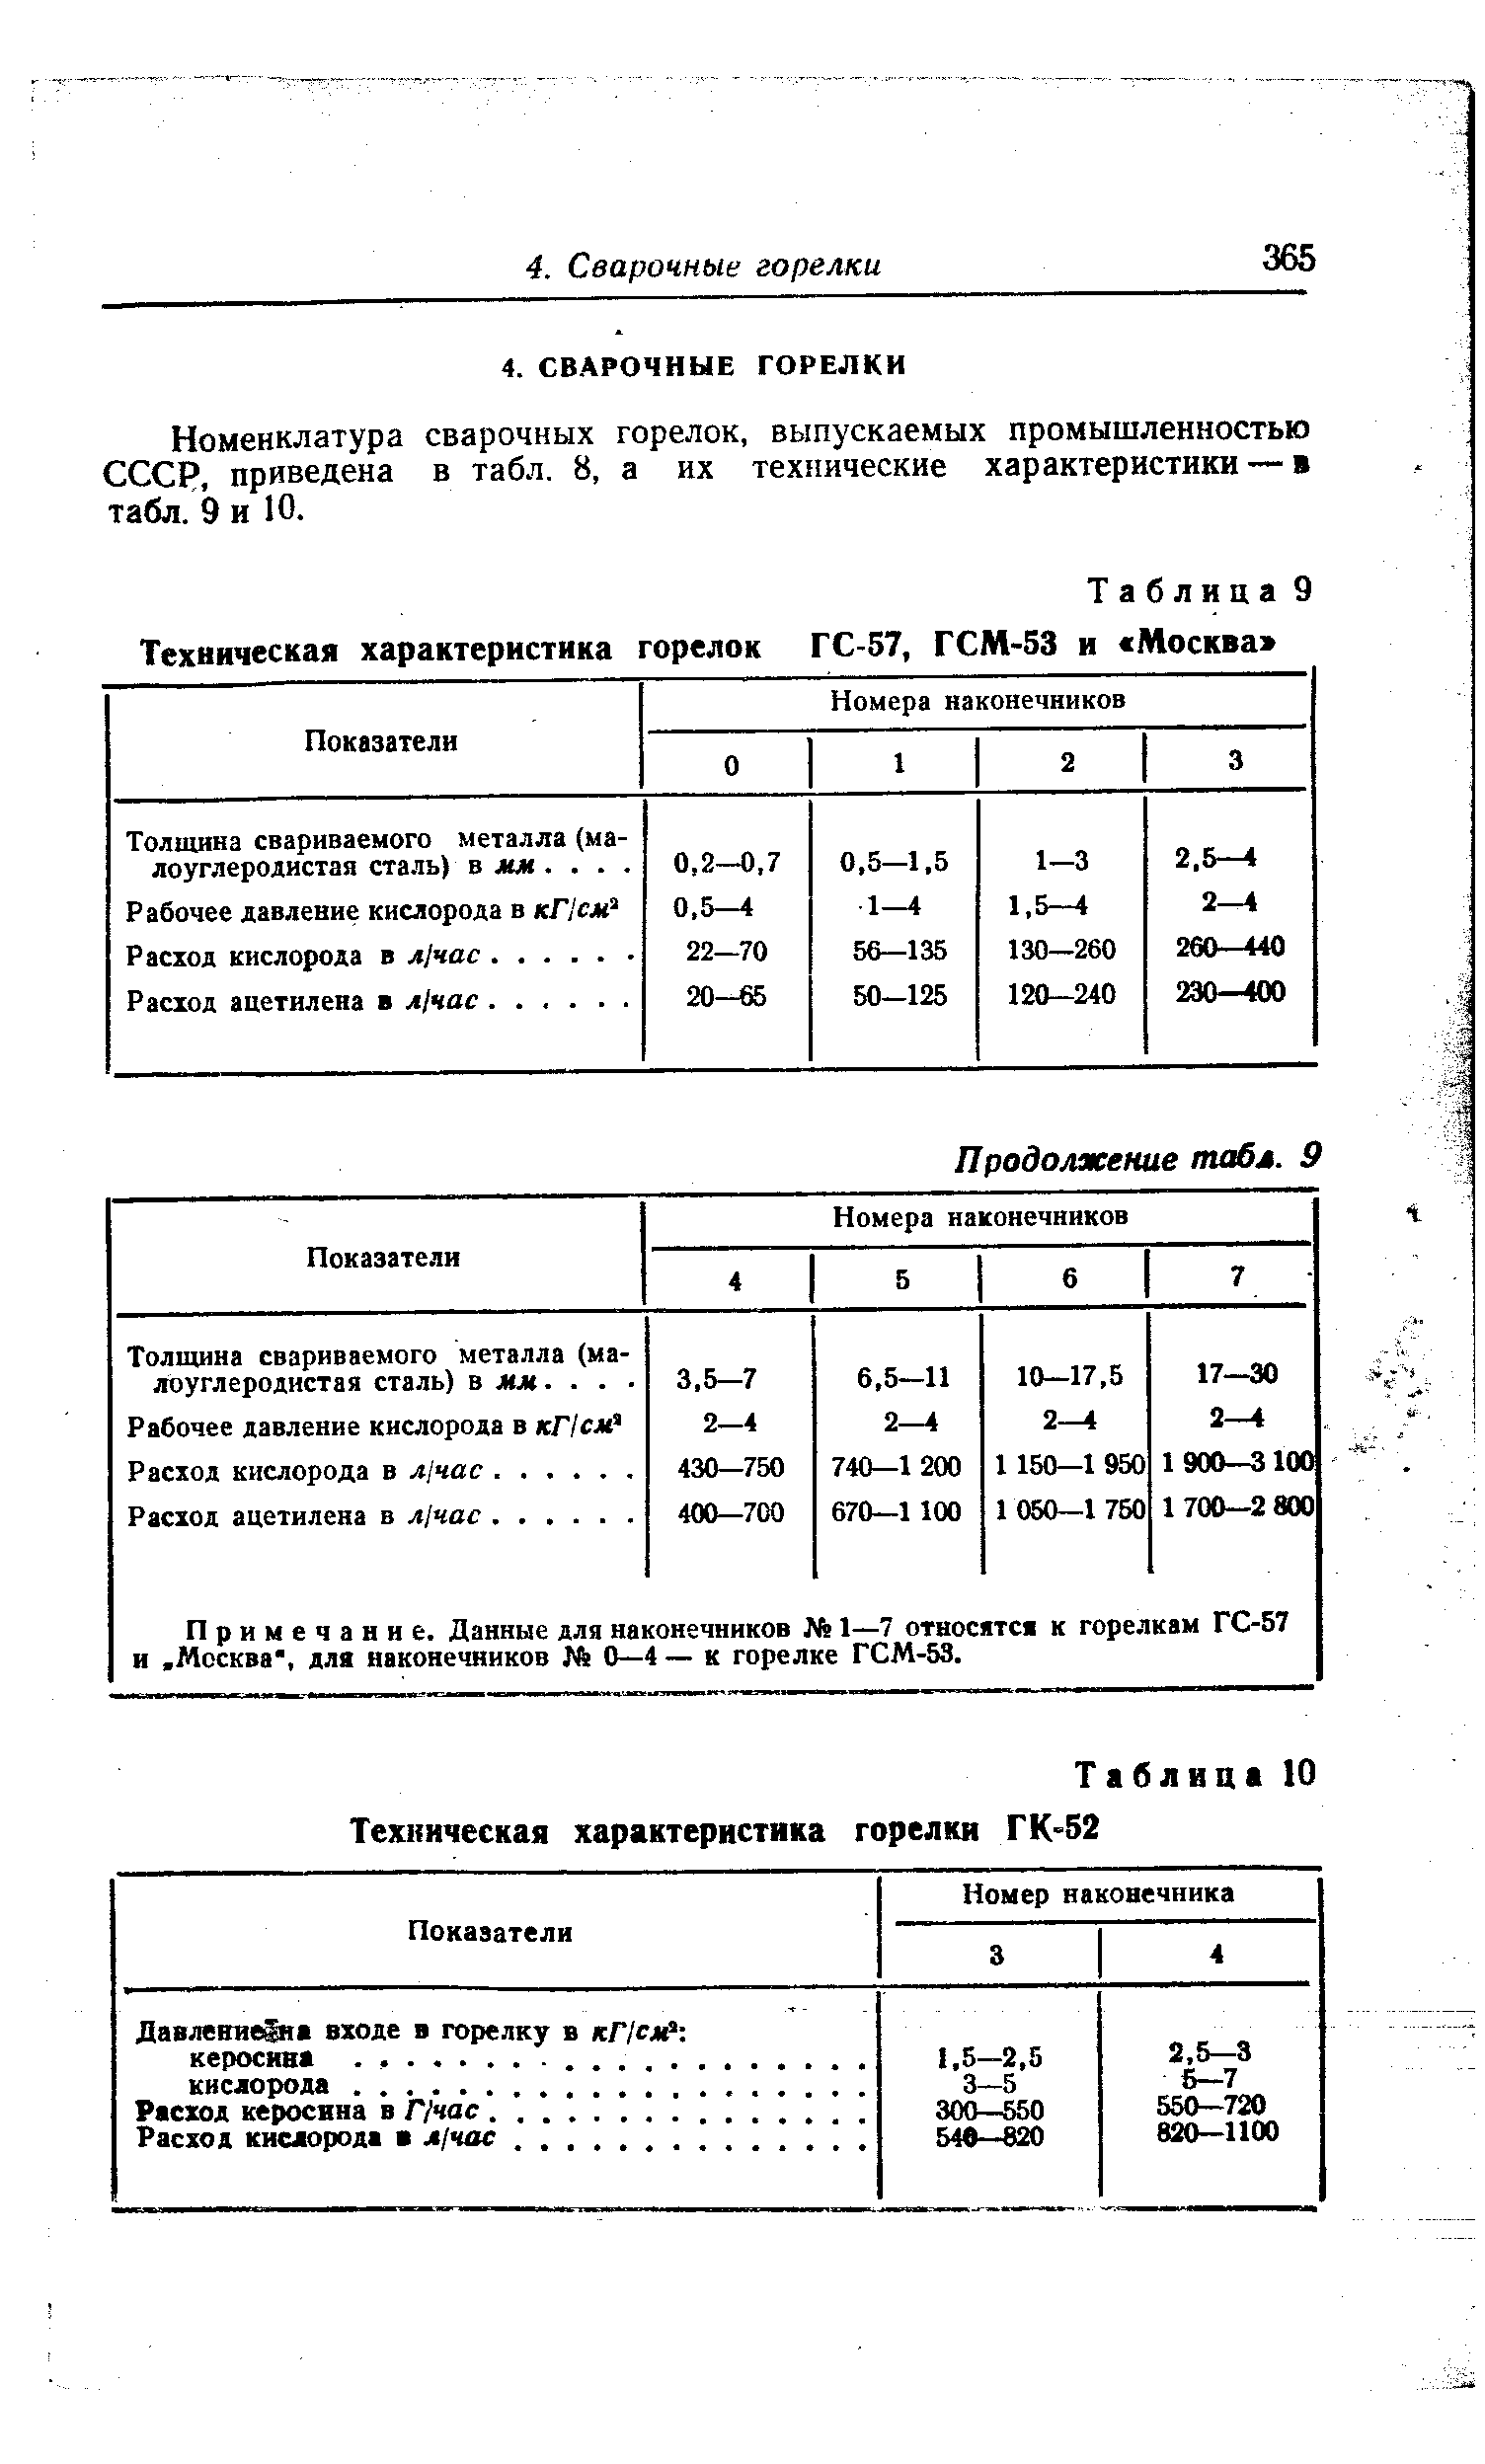 Номенклатура сварочных горелок, выпускаемых промышленностью СССР, приведена в табл. 8, а их технические характеристики — в табл. 9 и 10.
